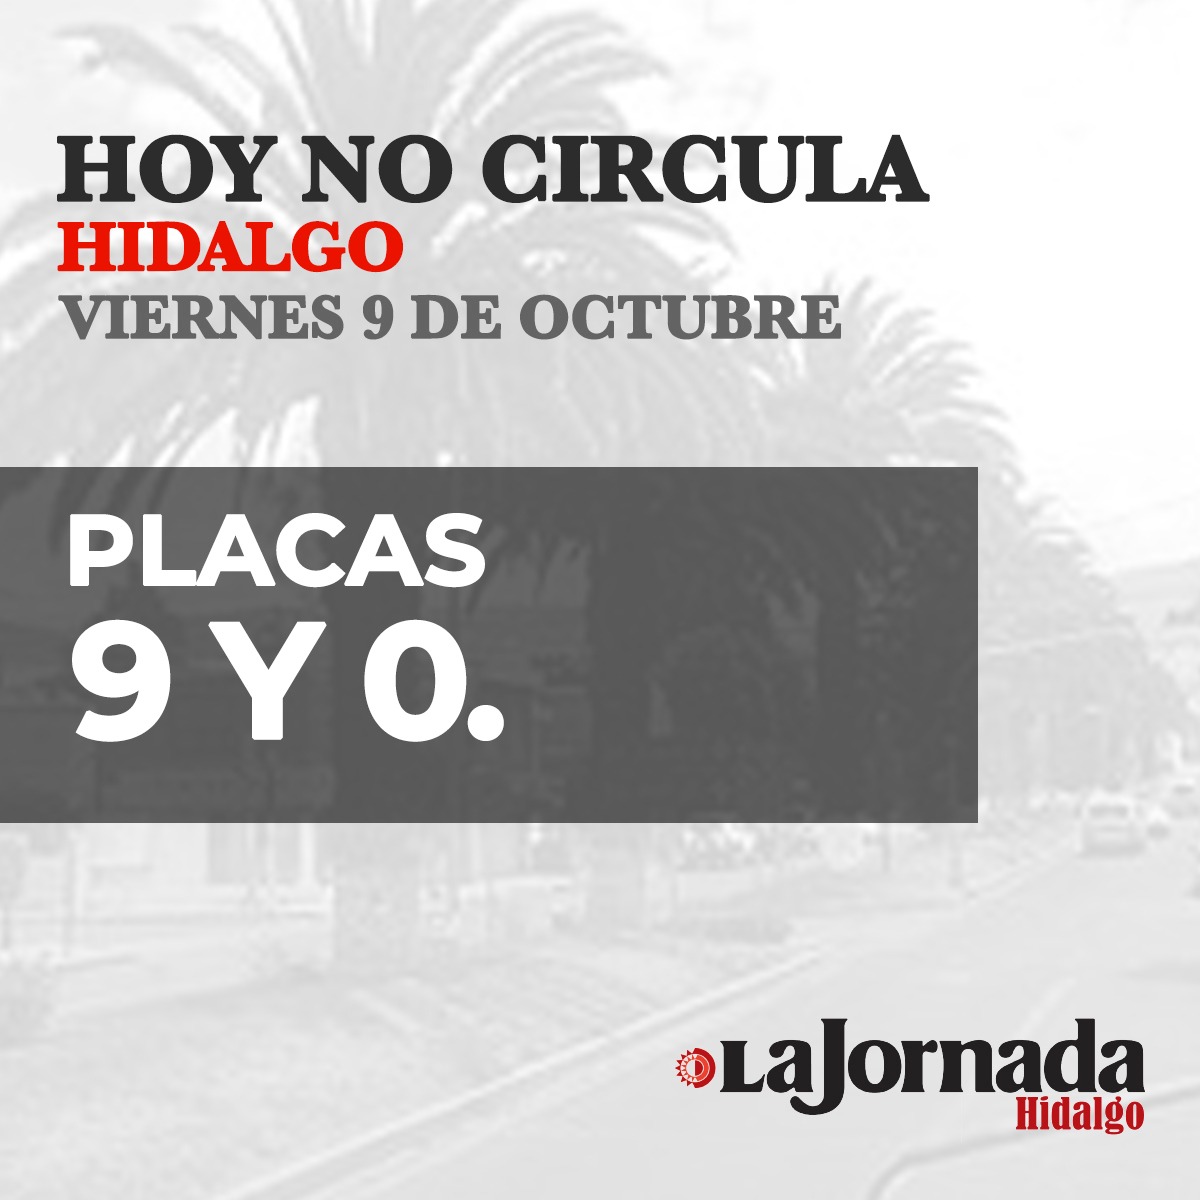 Hoy No Circula Hidalgo viernes 09 de octubre